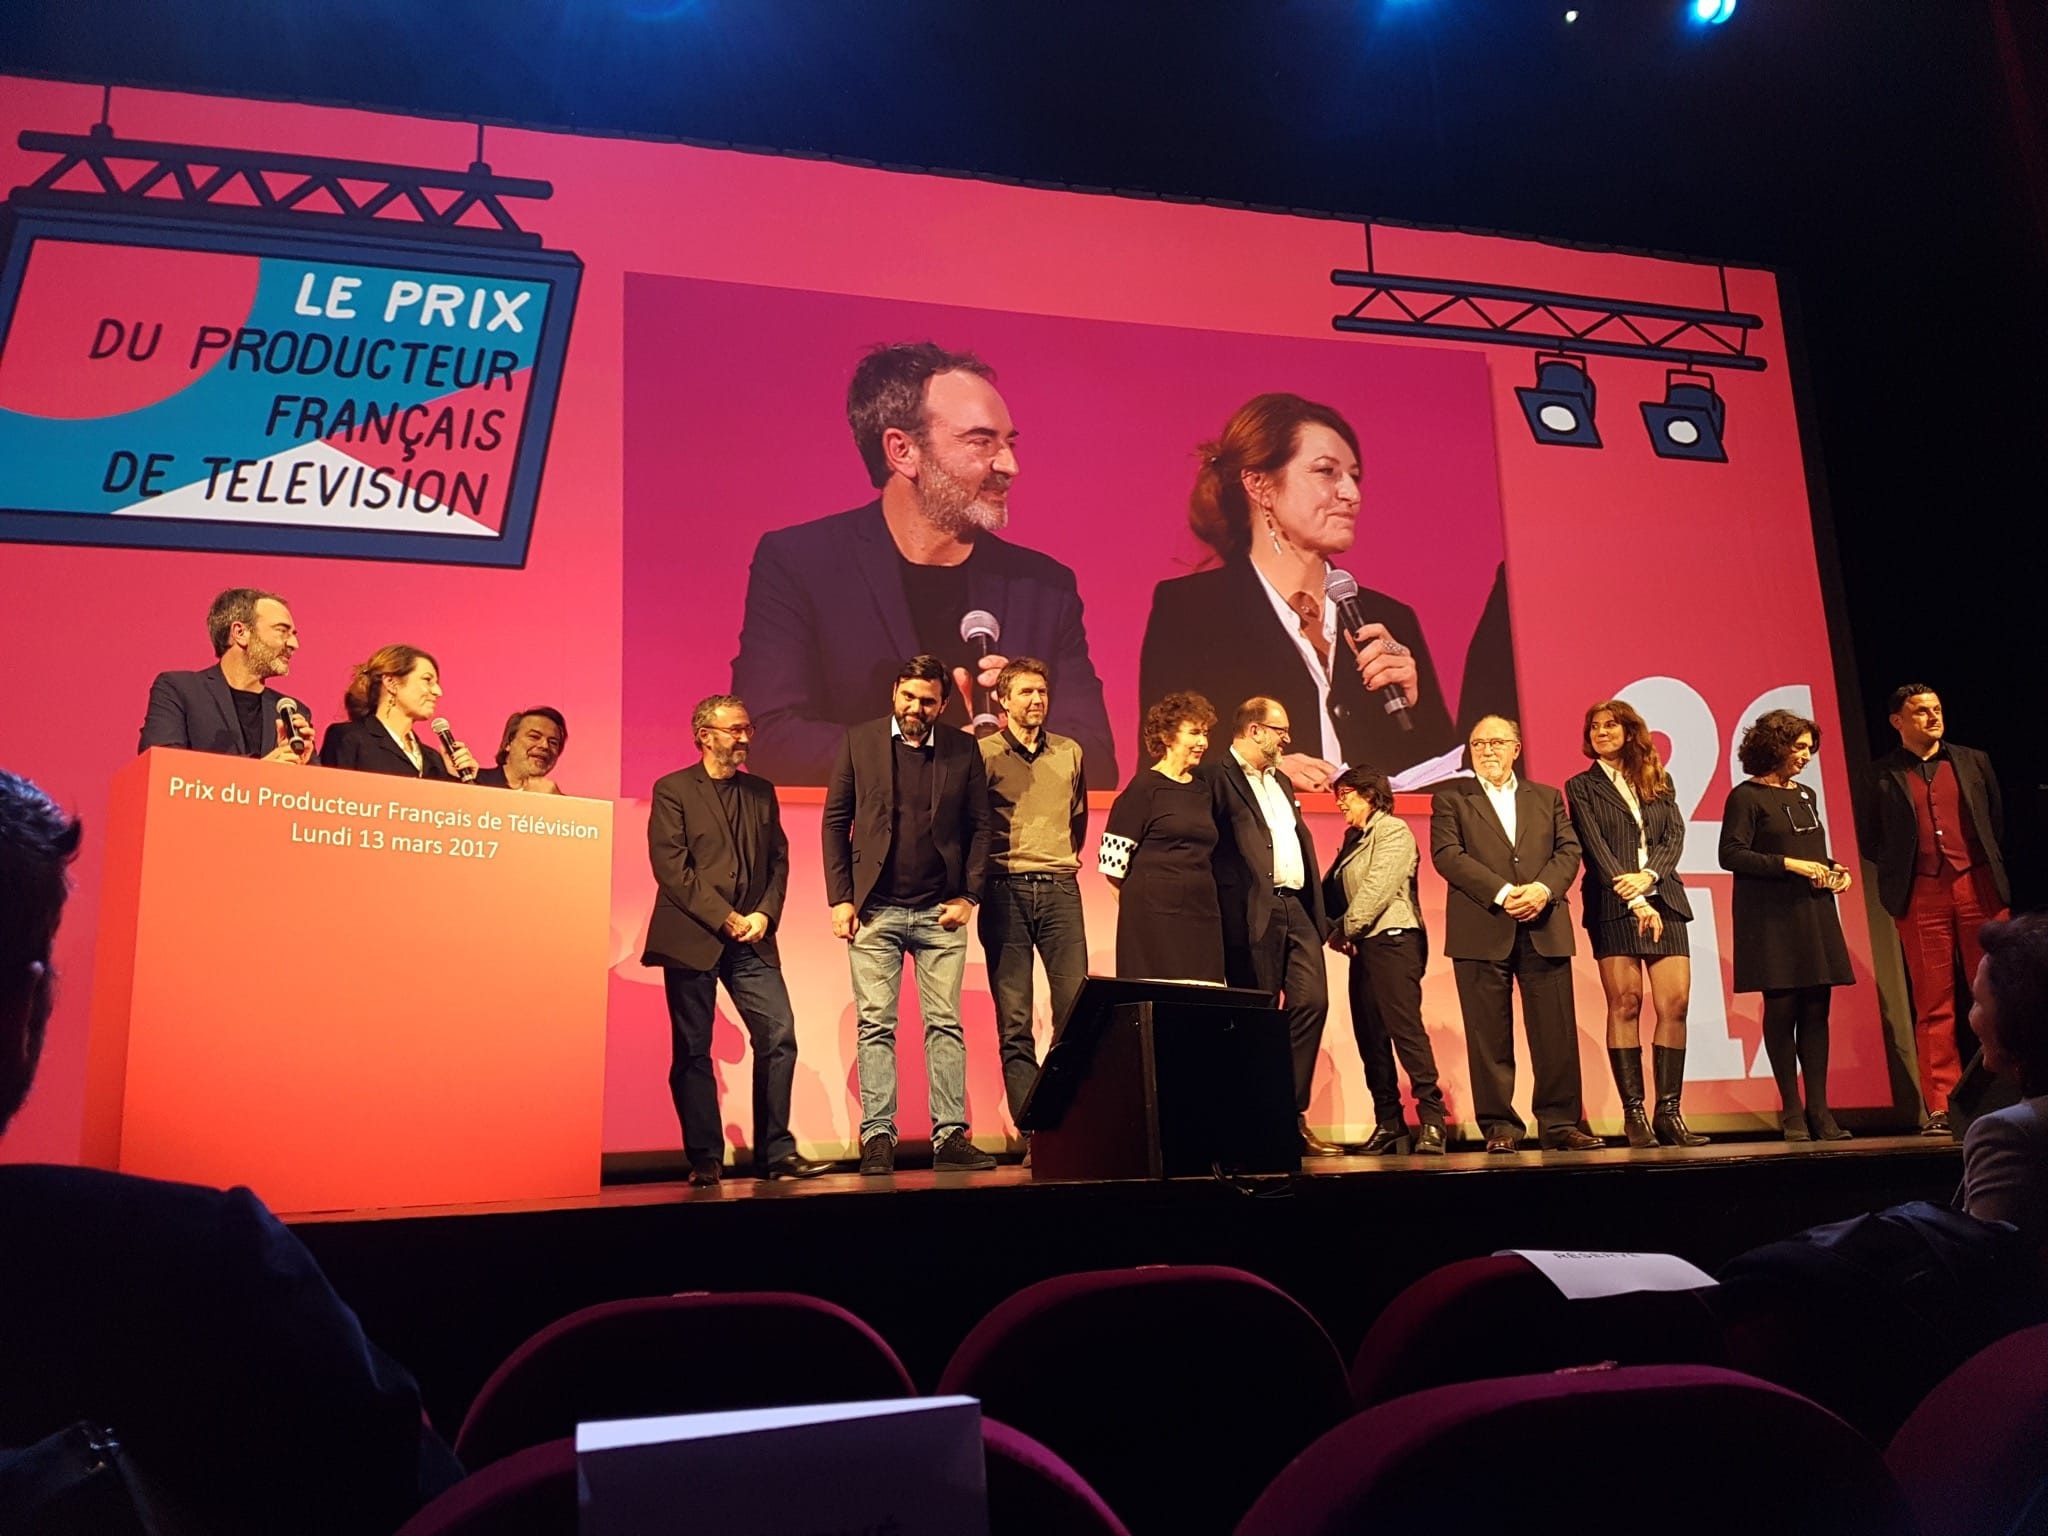 Prix du producteur français de télévision 2017 image 4